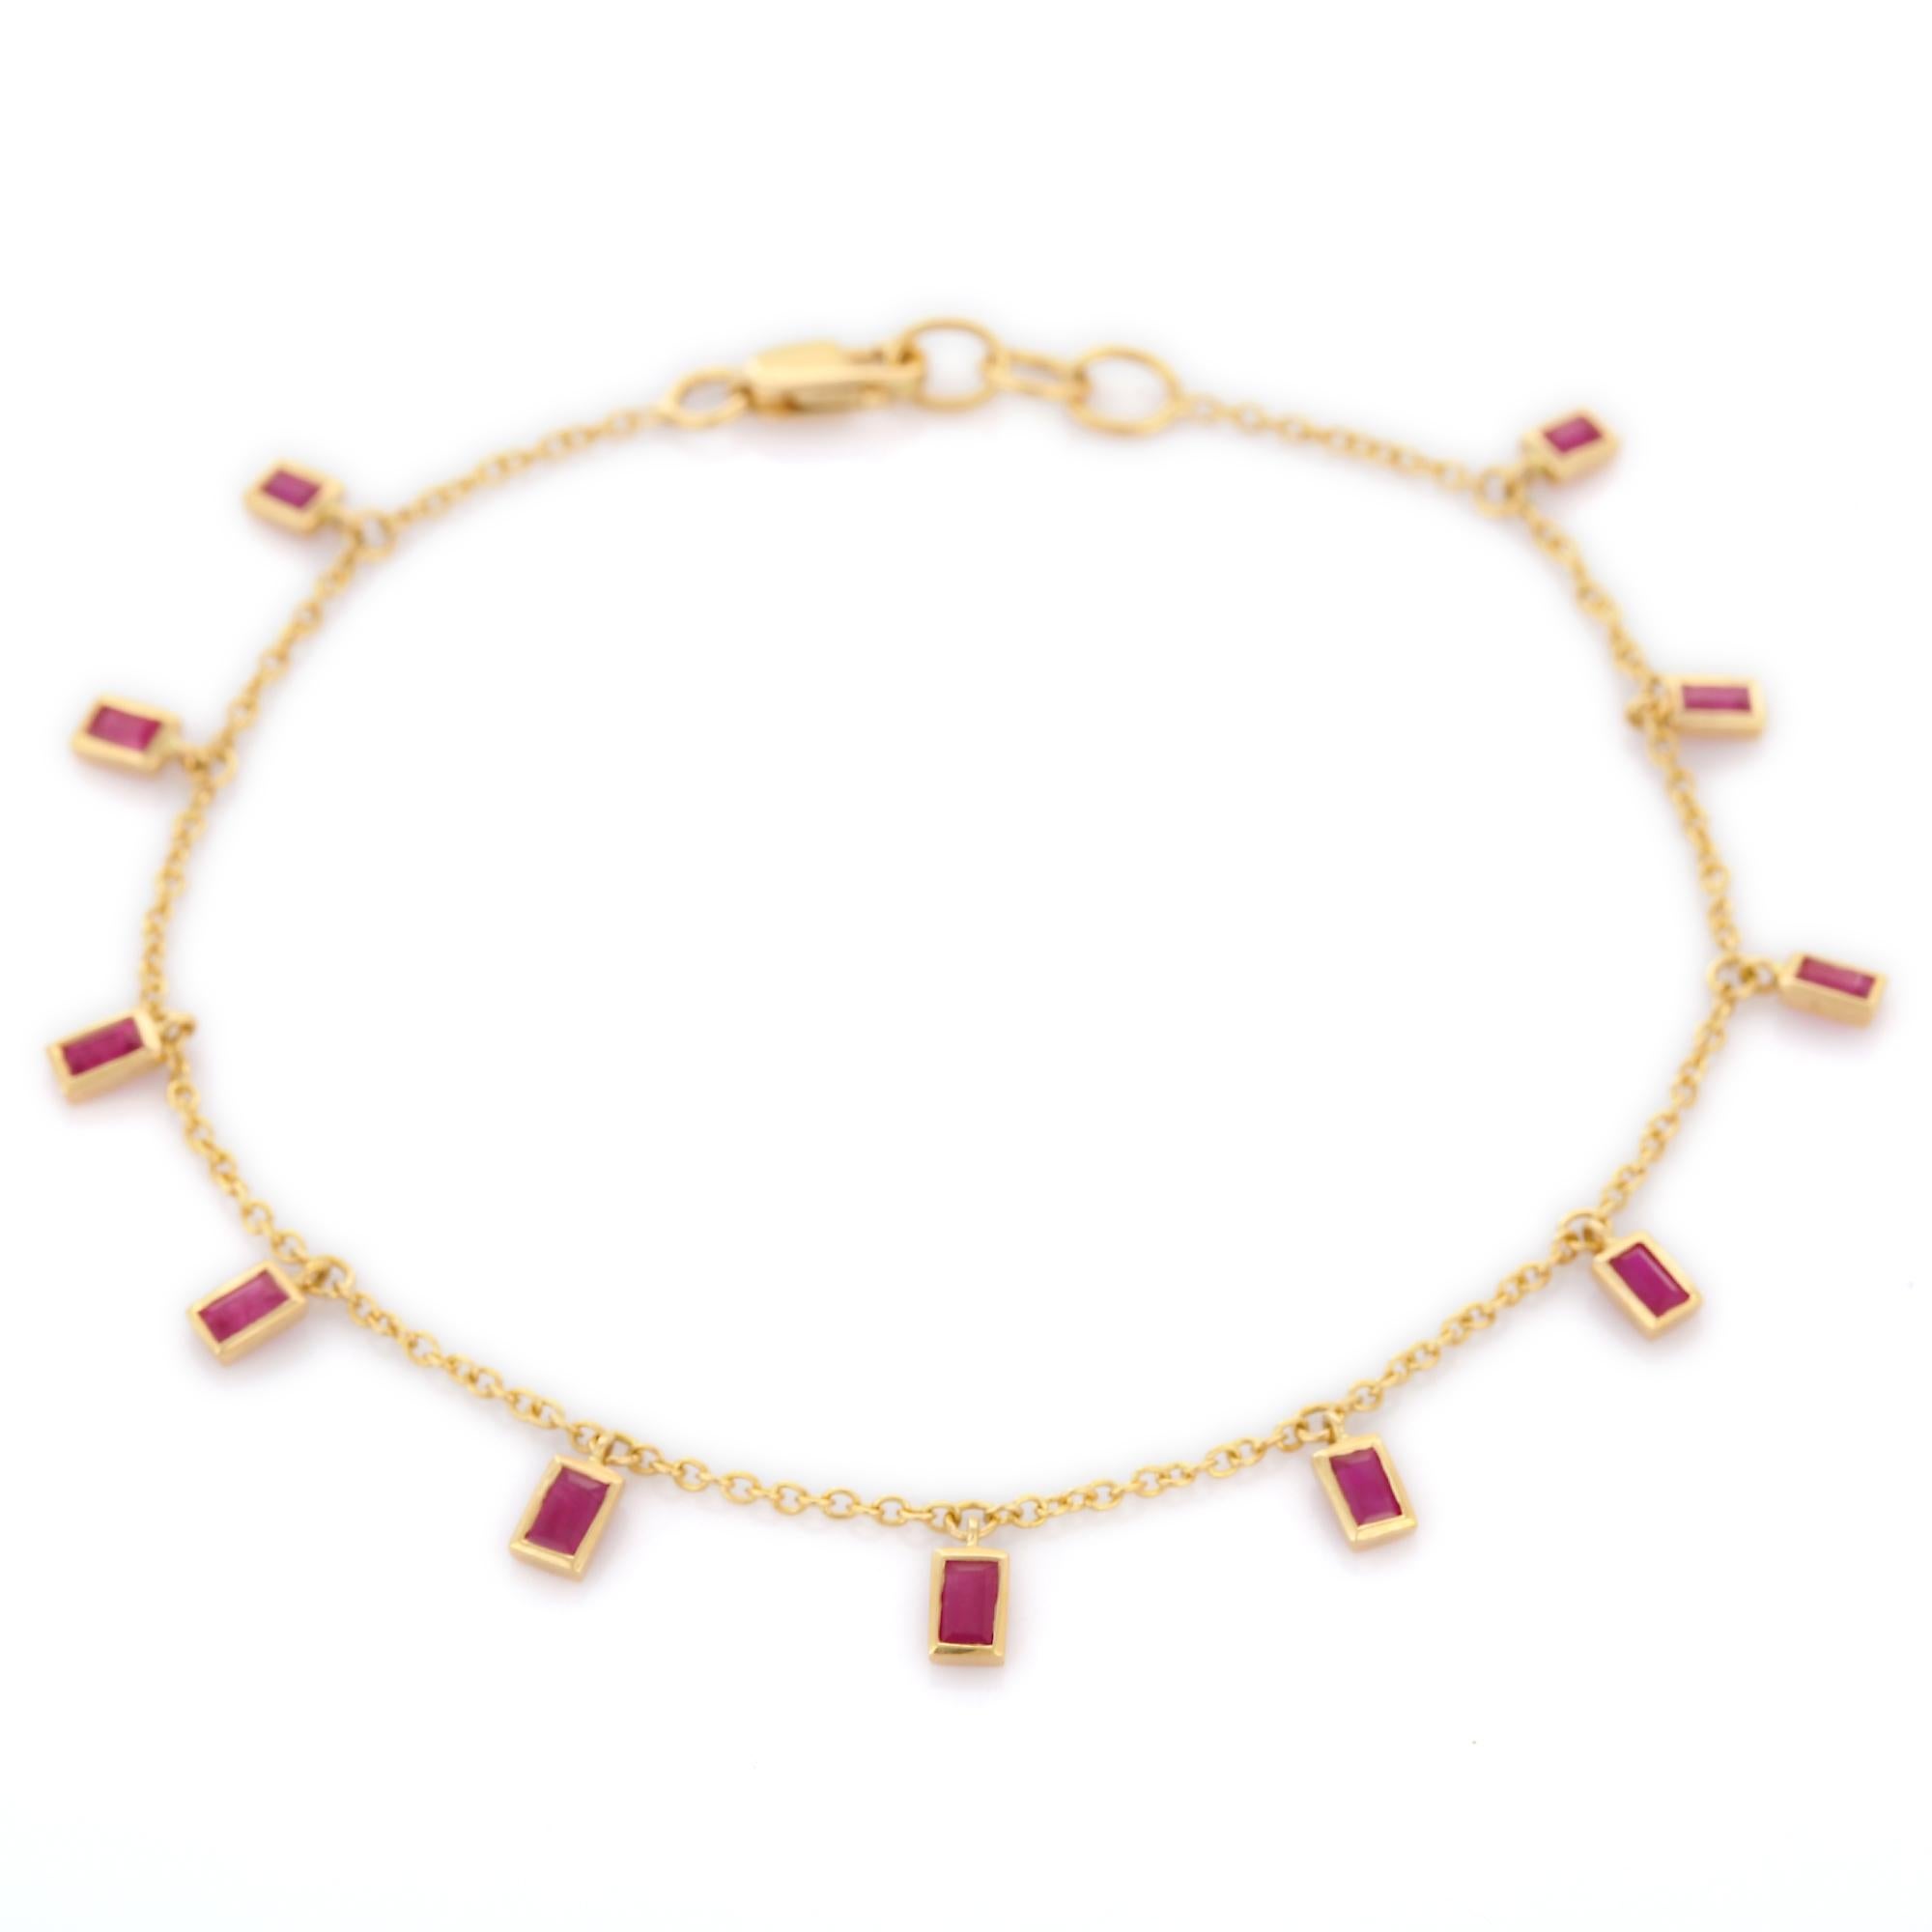 Taille octogone Bracelet pendentif en or jaune 18 carats avec rubis taill en octogone, fabriqu  la main.  en vente